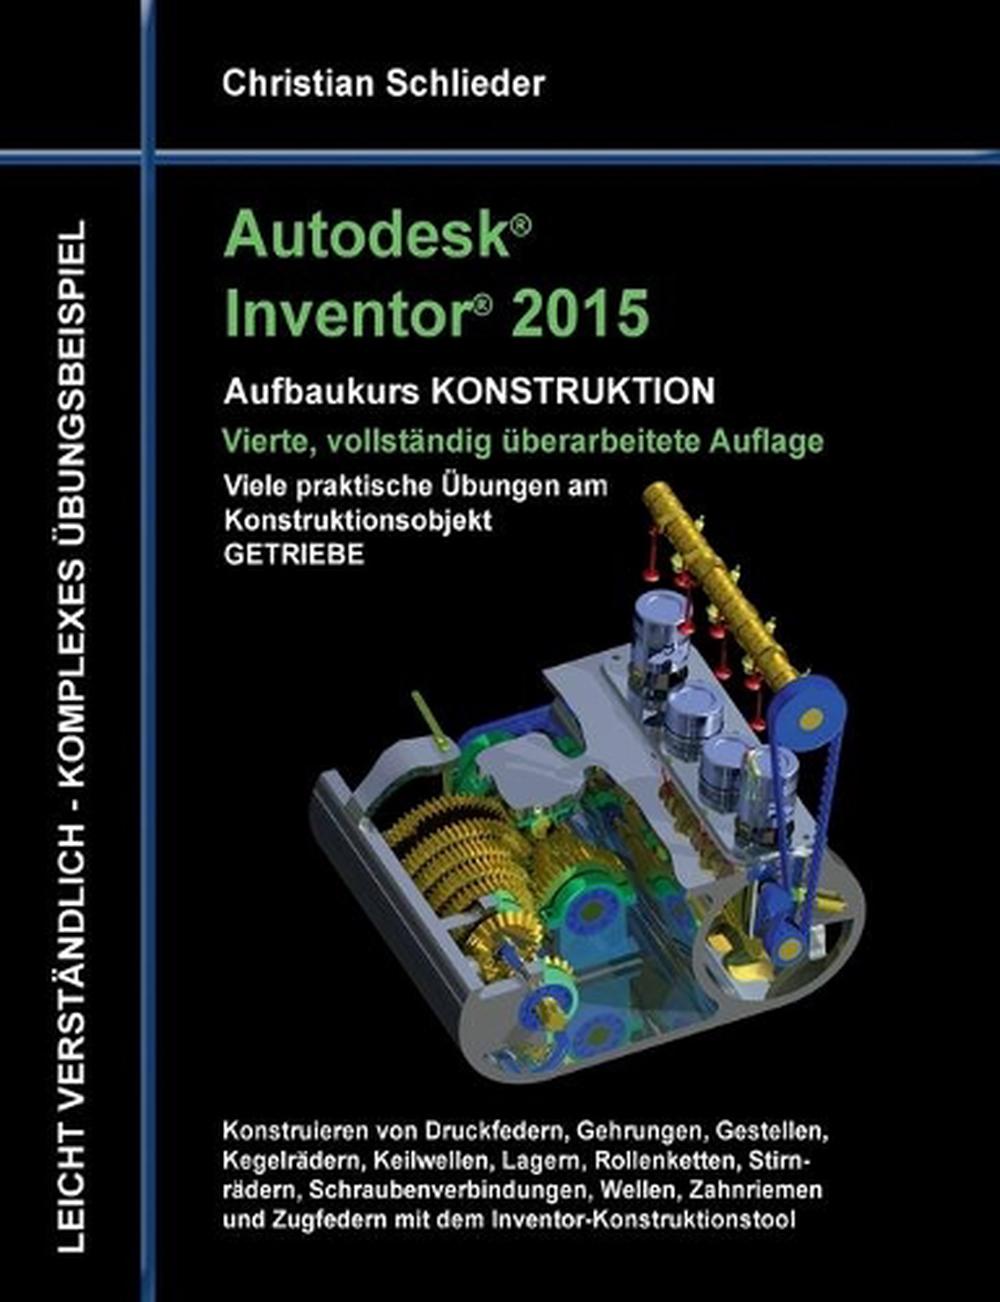 autodesk inventor 2015 viewer